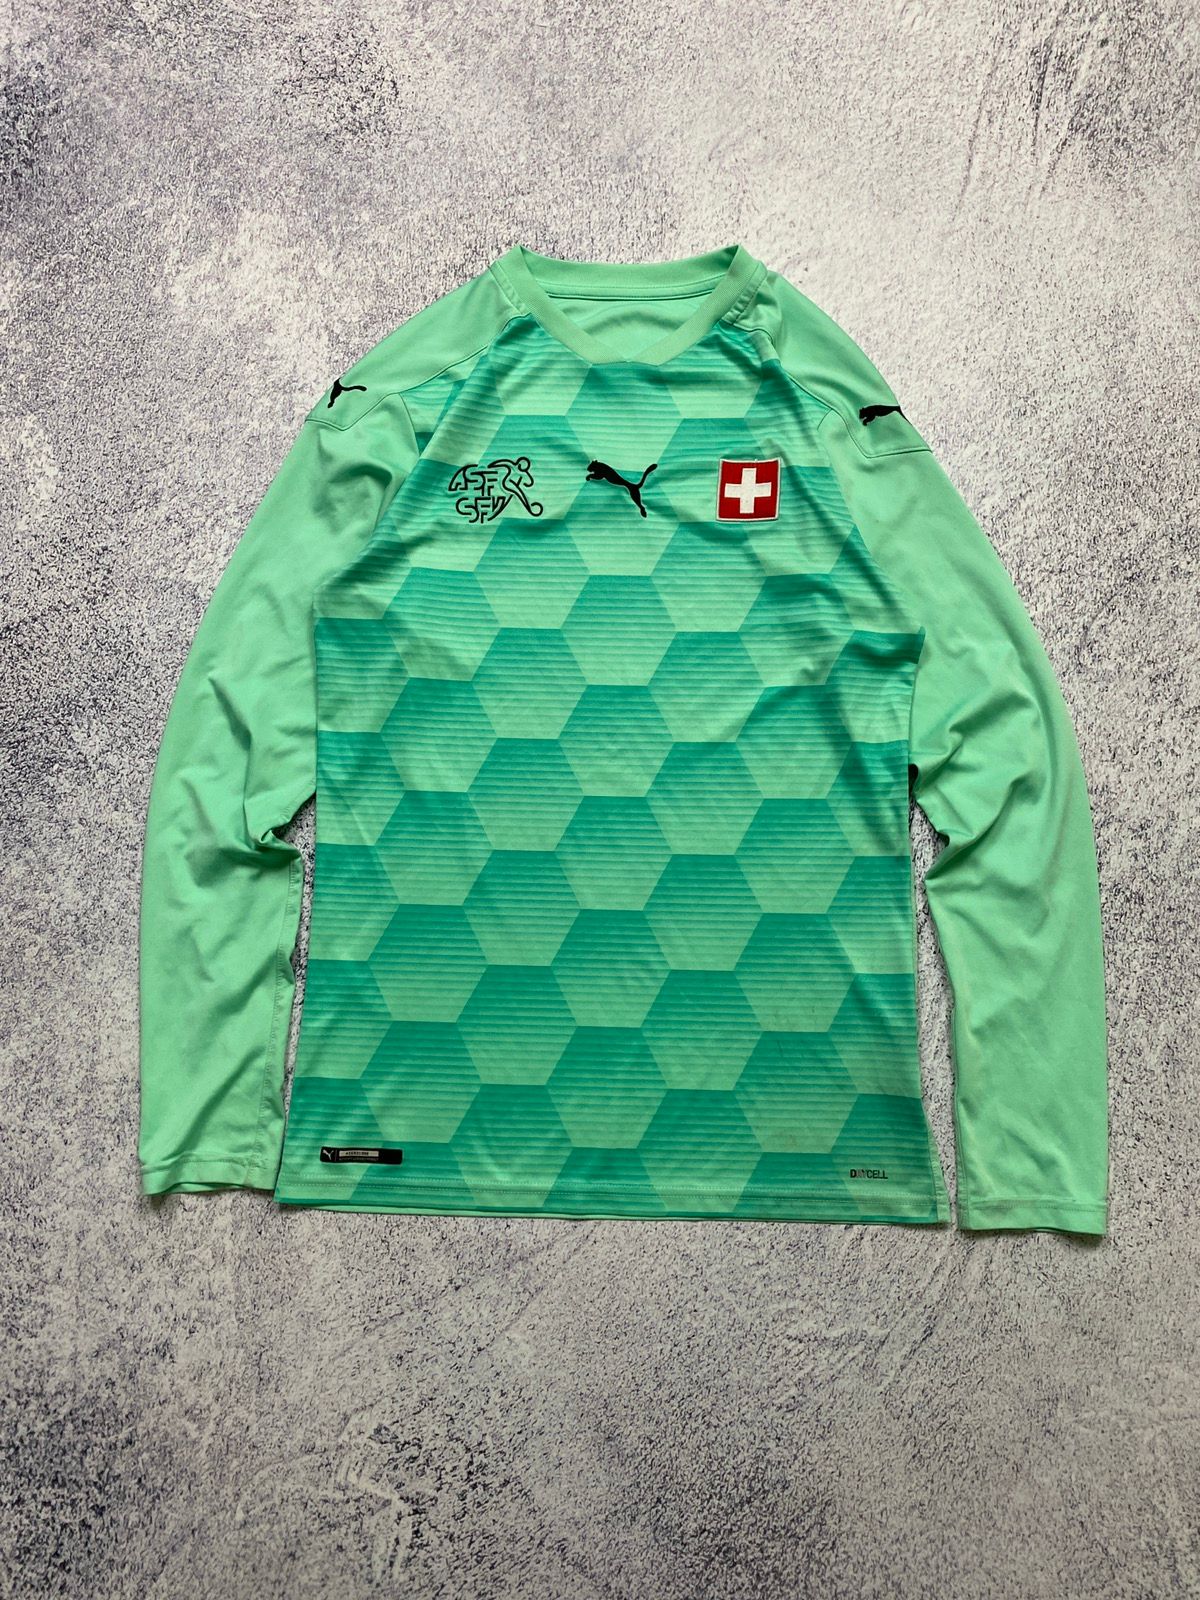 Pre-owned Jersey X Puma Switzerland 2019 Goalkeeper Longsleeve Soccer Jersey In Green